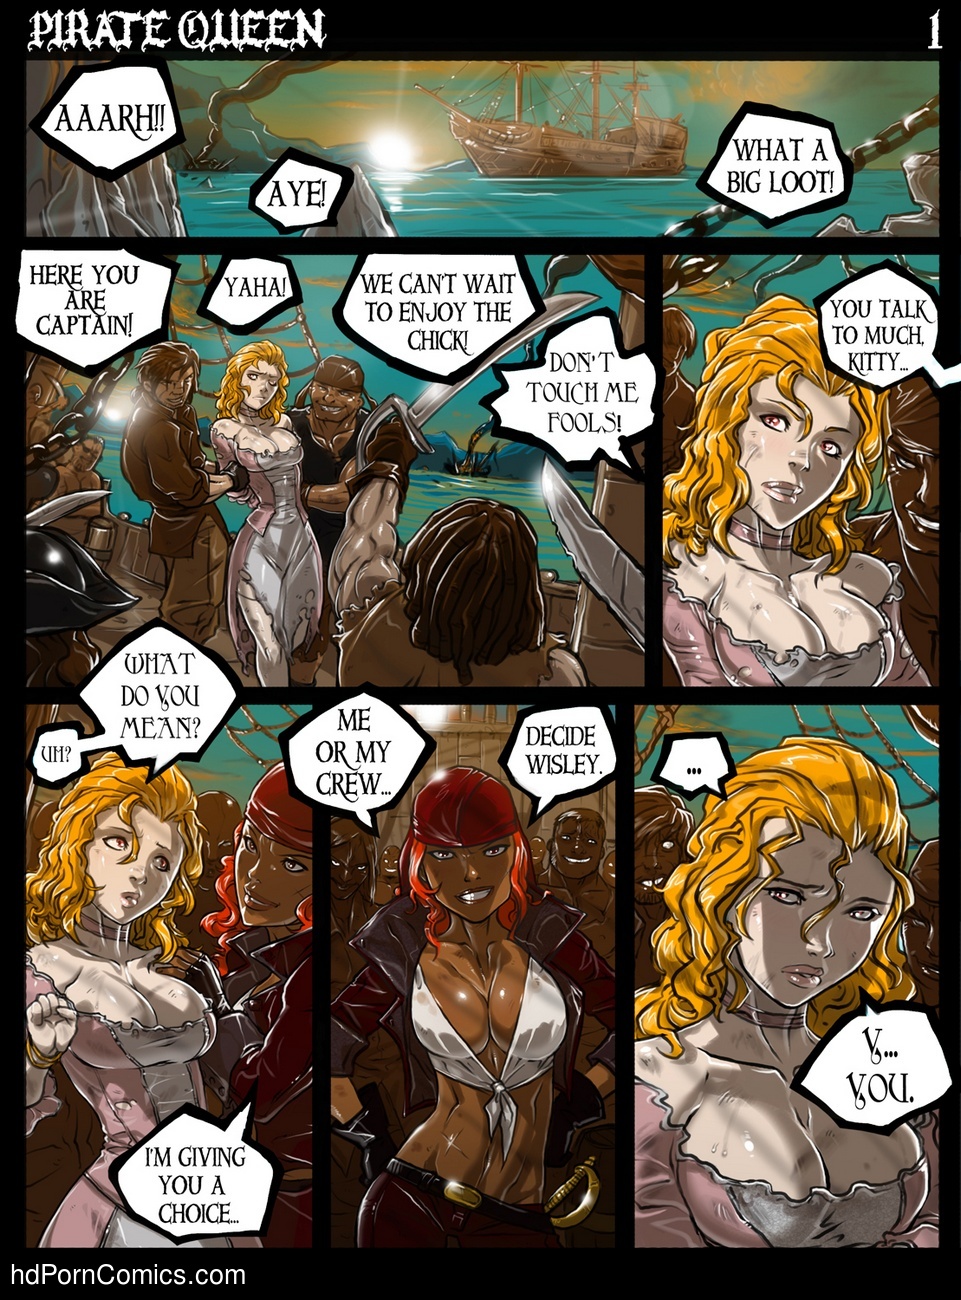 Pirate Sex Toons - Pirate Queen Sex Comic | HD Porn Comics